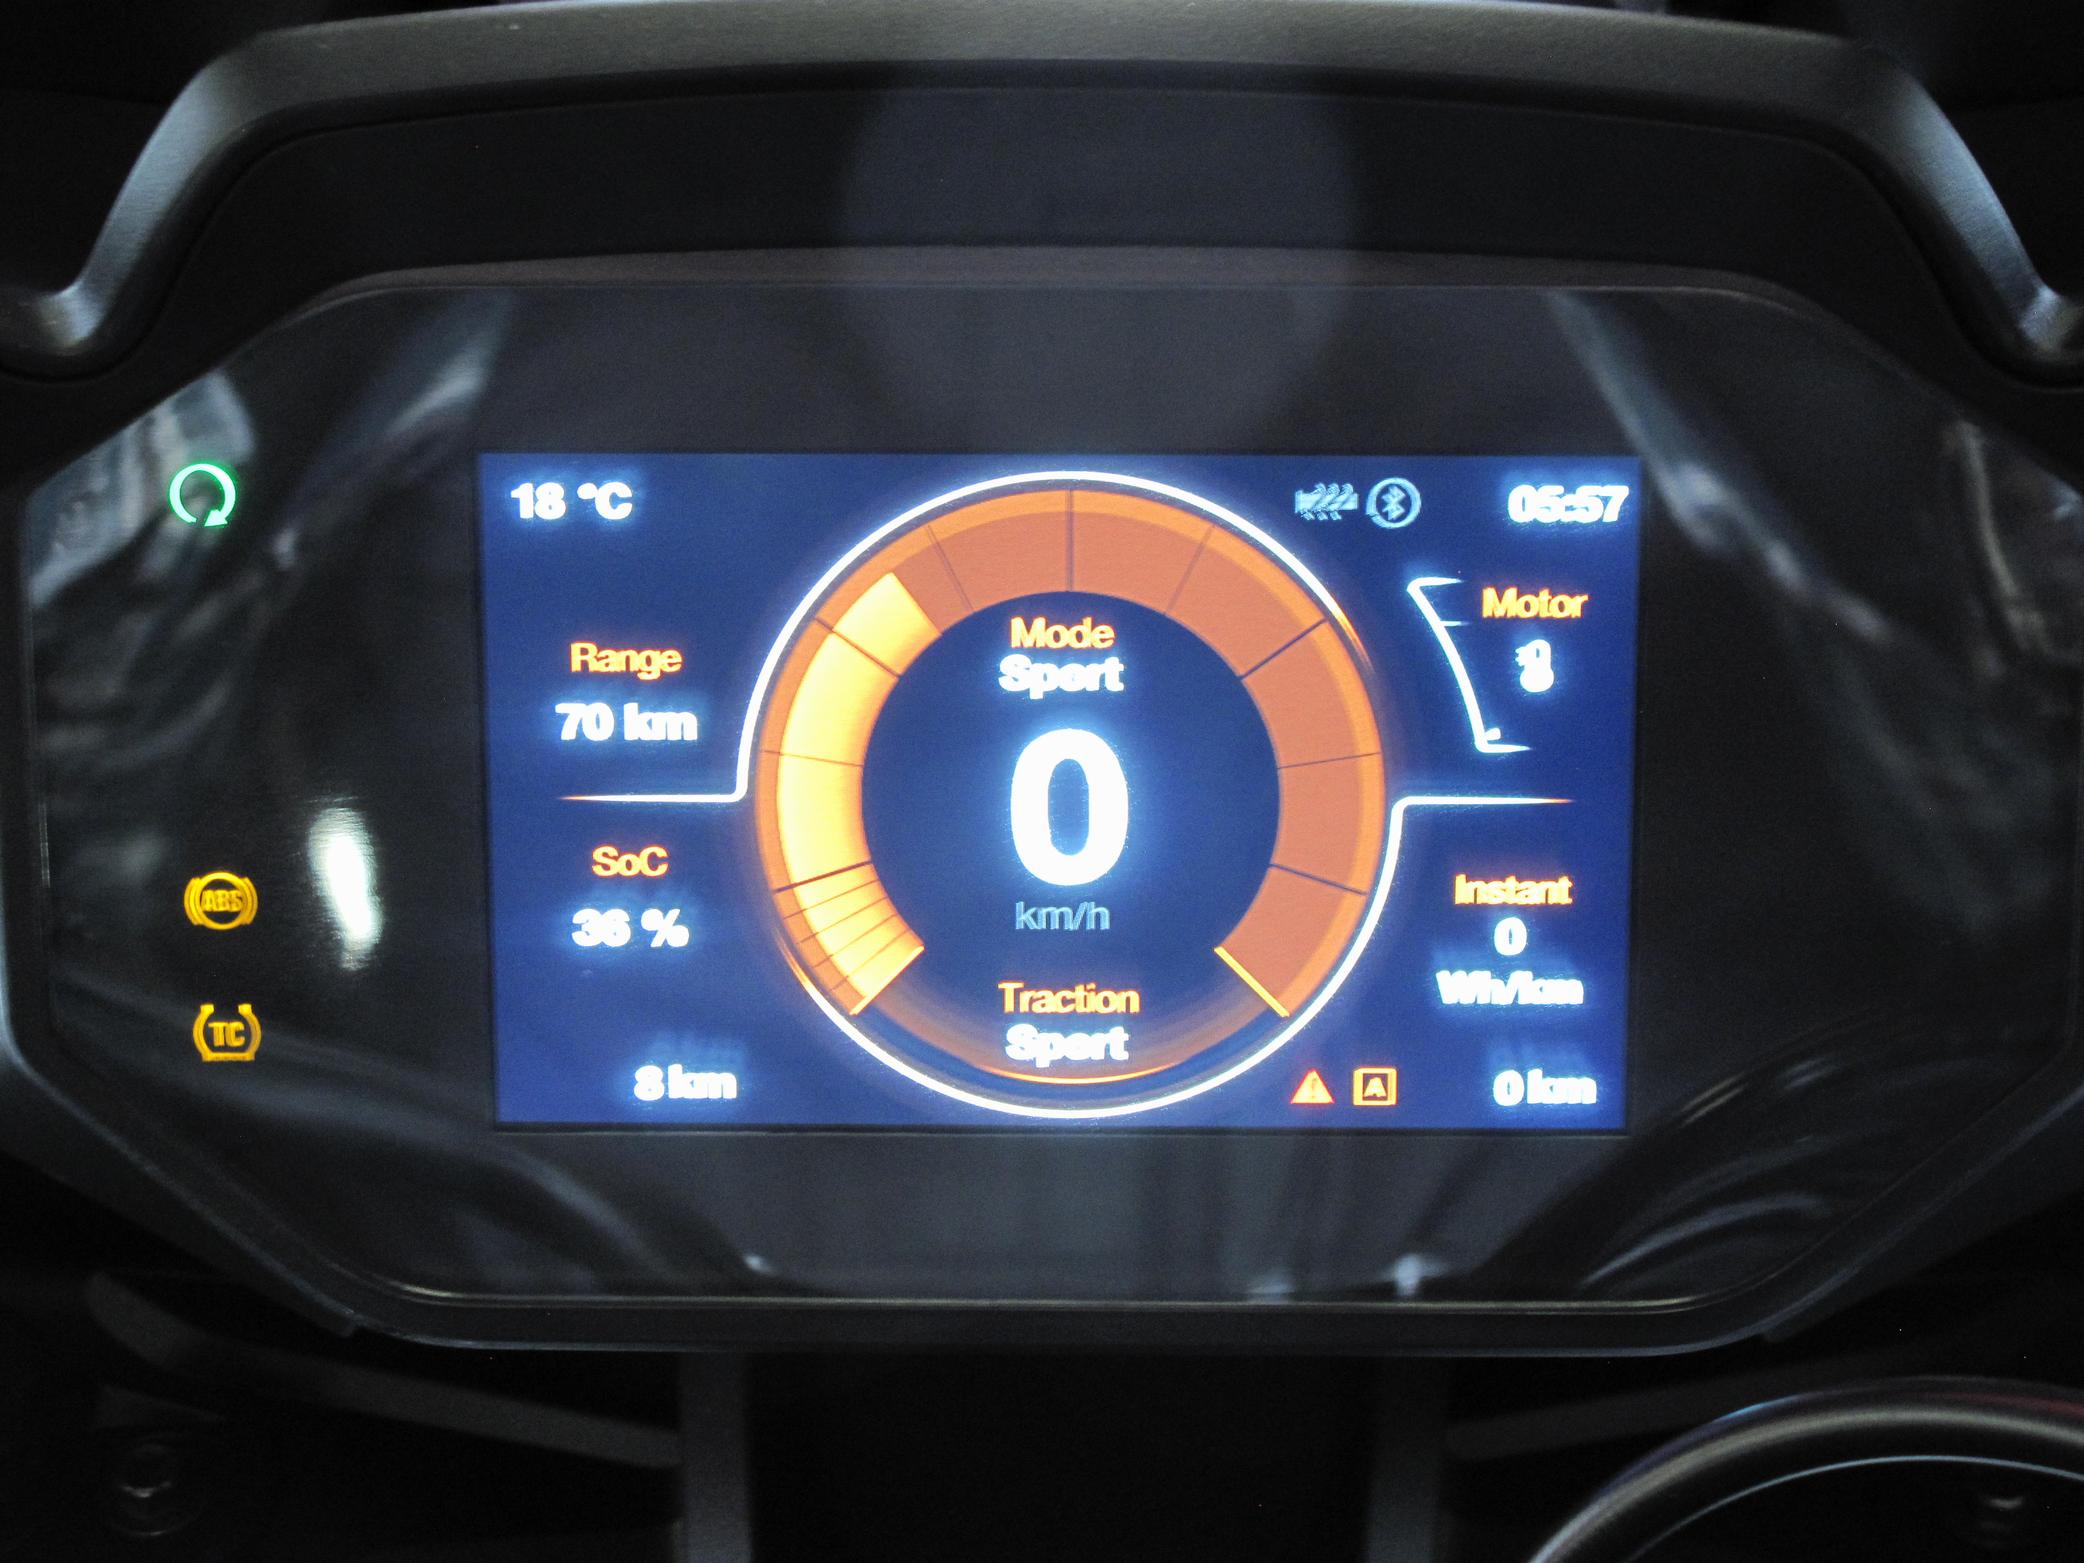 ZERO - SR/S Premium 14.4 kW